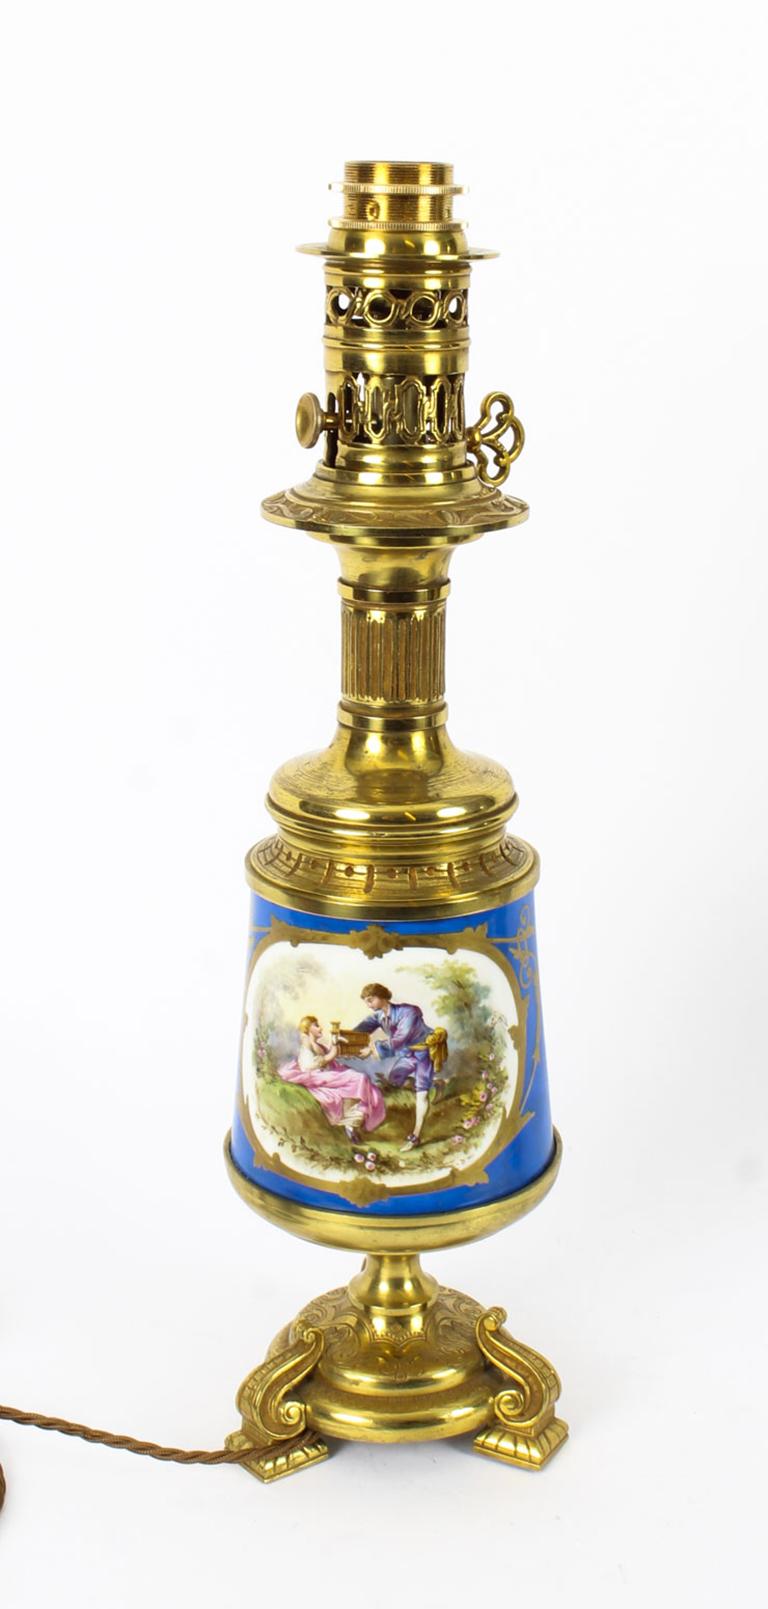 Il s'agit d'une grande paire exquise de lampes de table à huile en porcelaine de Sèvres et montées en bronze doré qui ont été habilement converties à l'électricité en conservant leurs montures à huile originales et charmantes, vers 1870.

Les